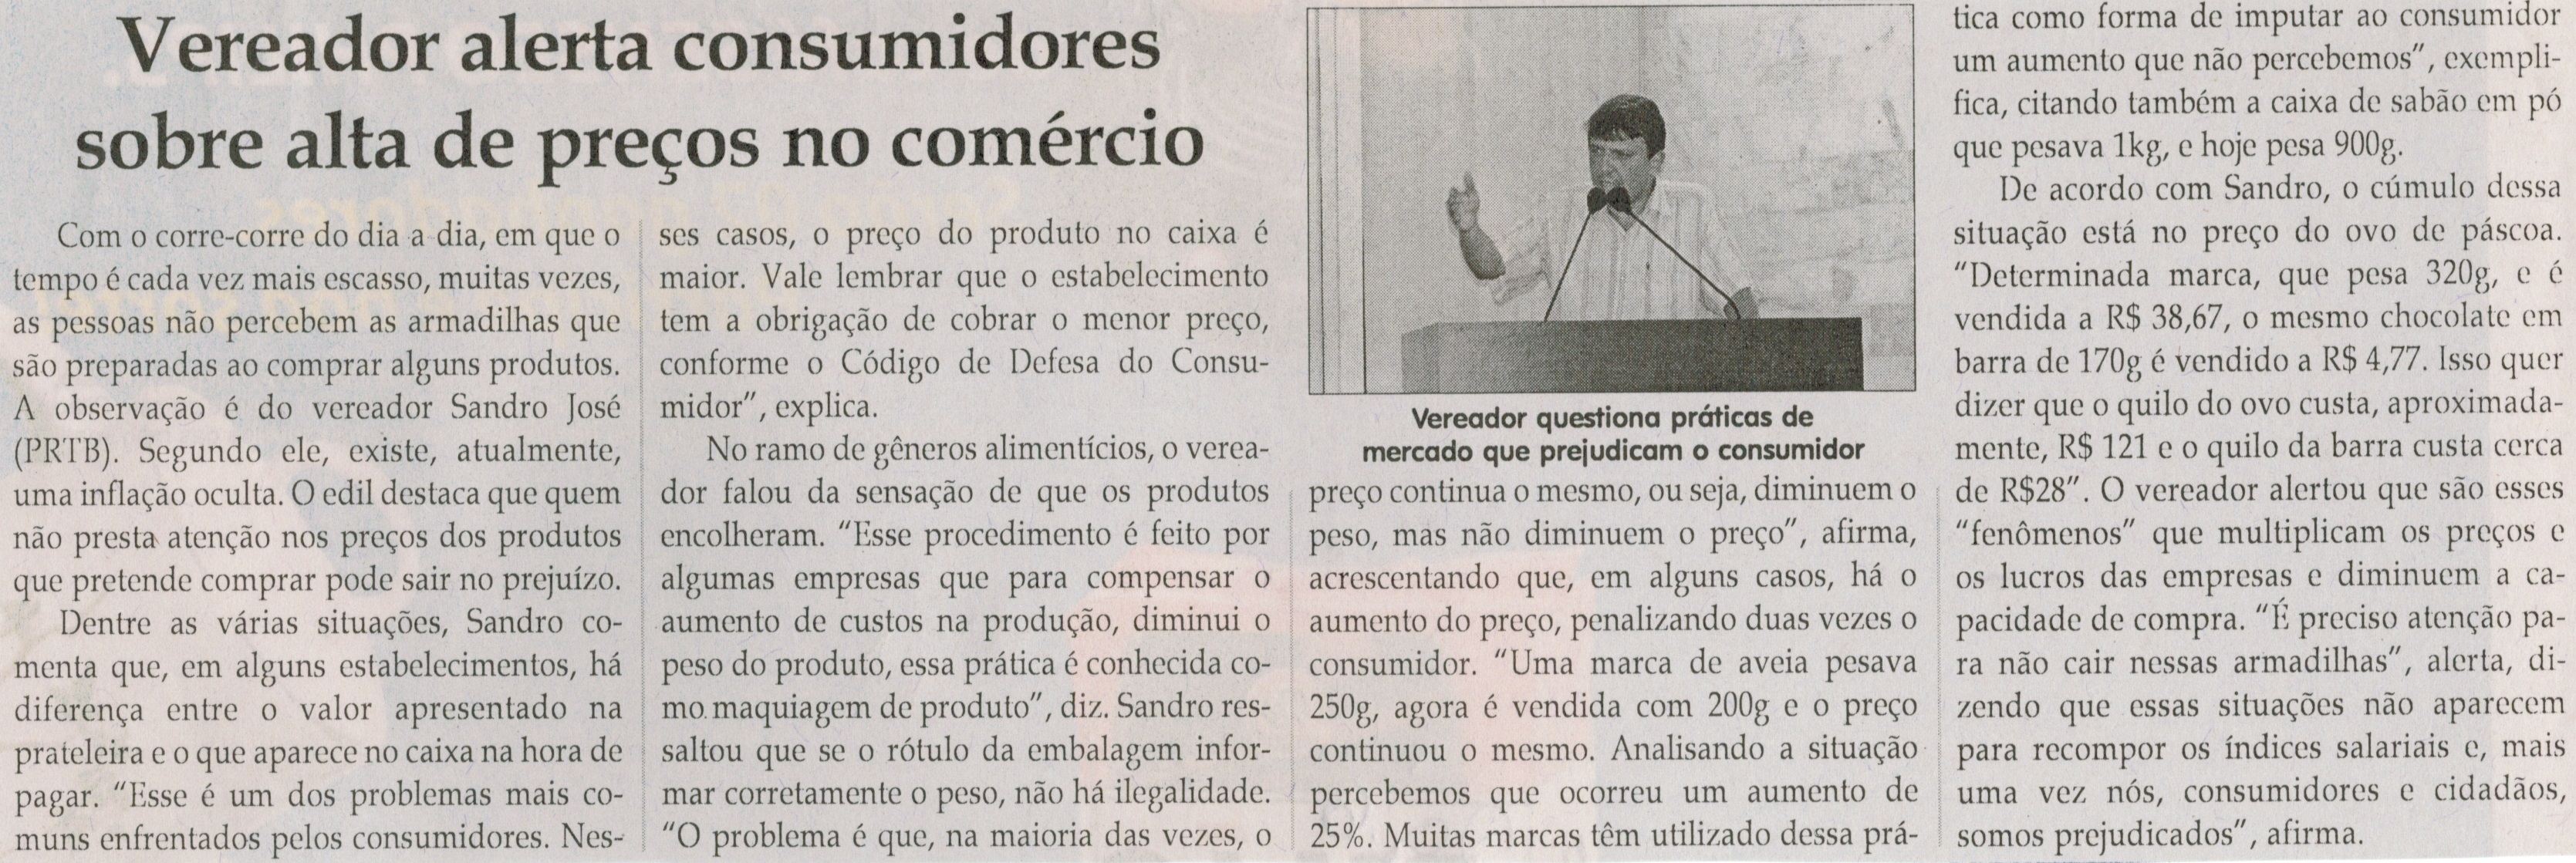 Vereador alerta consumidores sobre alta de preços no comércio. Jornal Correio da Cidade, Conselheiro Lafaiete, 06 set. 2014, p. 6.